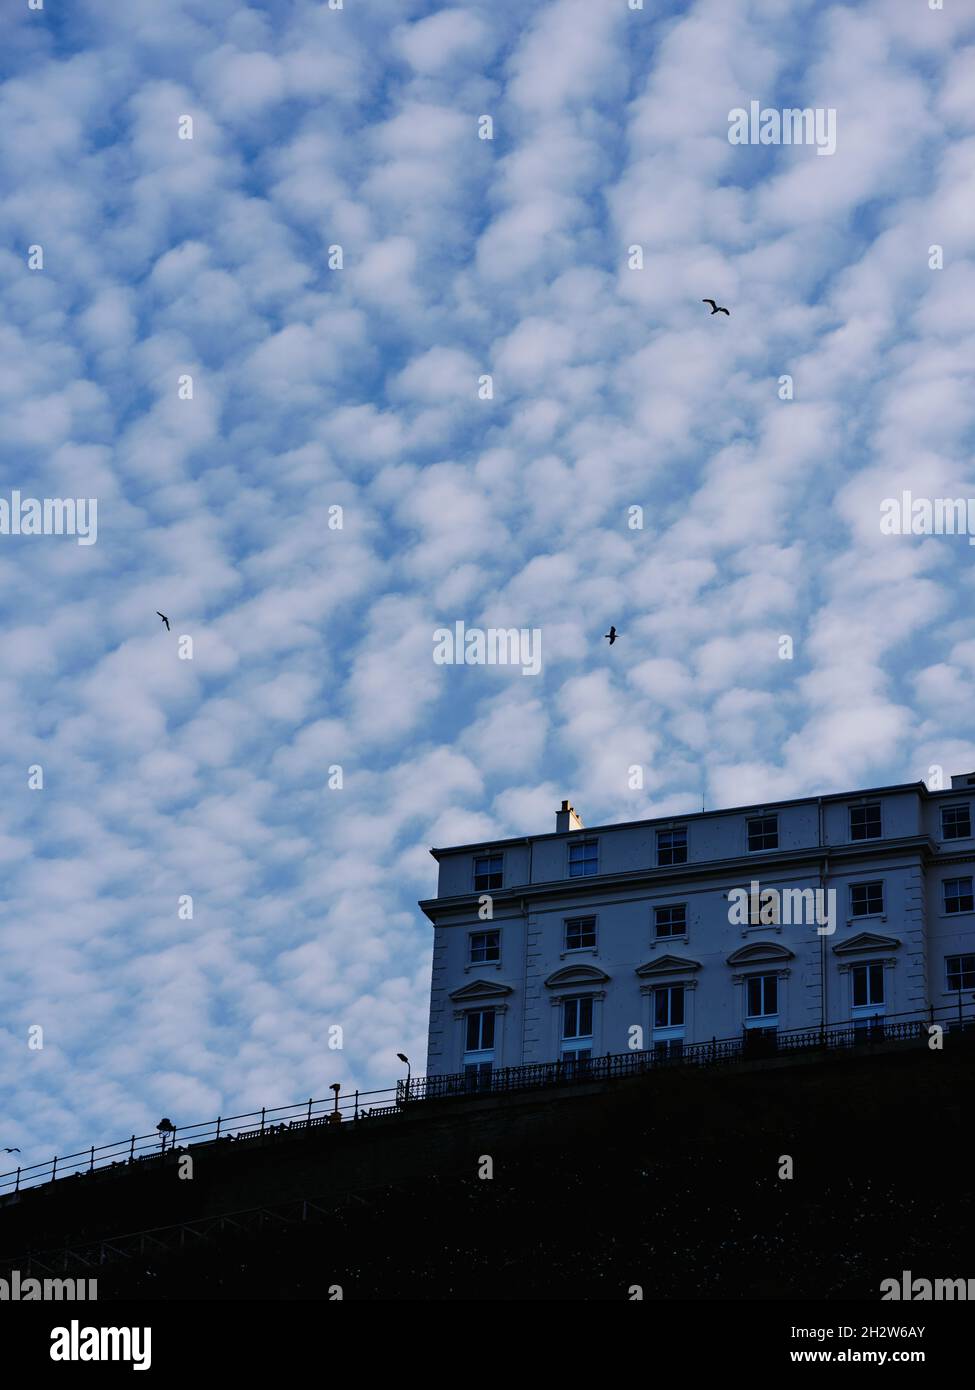 Altocumulus - Mackerel Sky - Herringbone Sky - Speckled Sky - Floccus Clouds Stock Photo